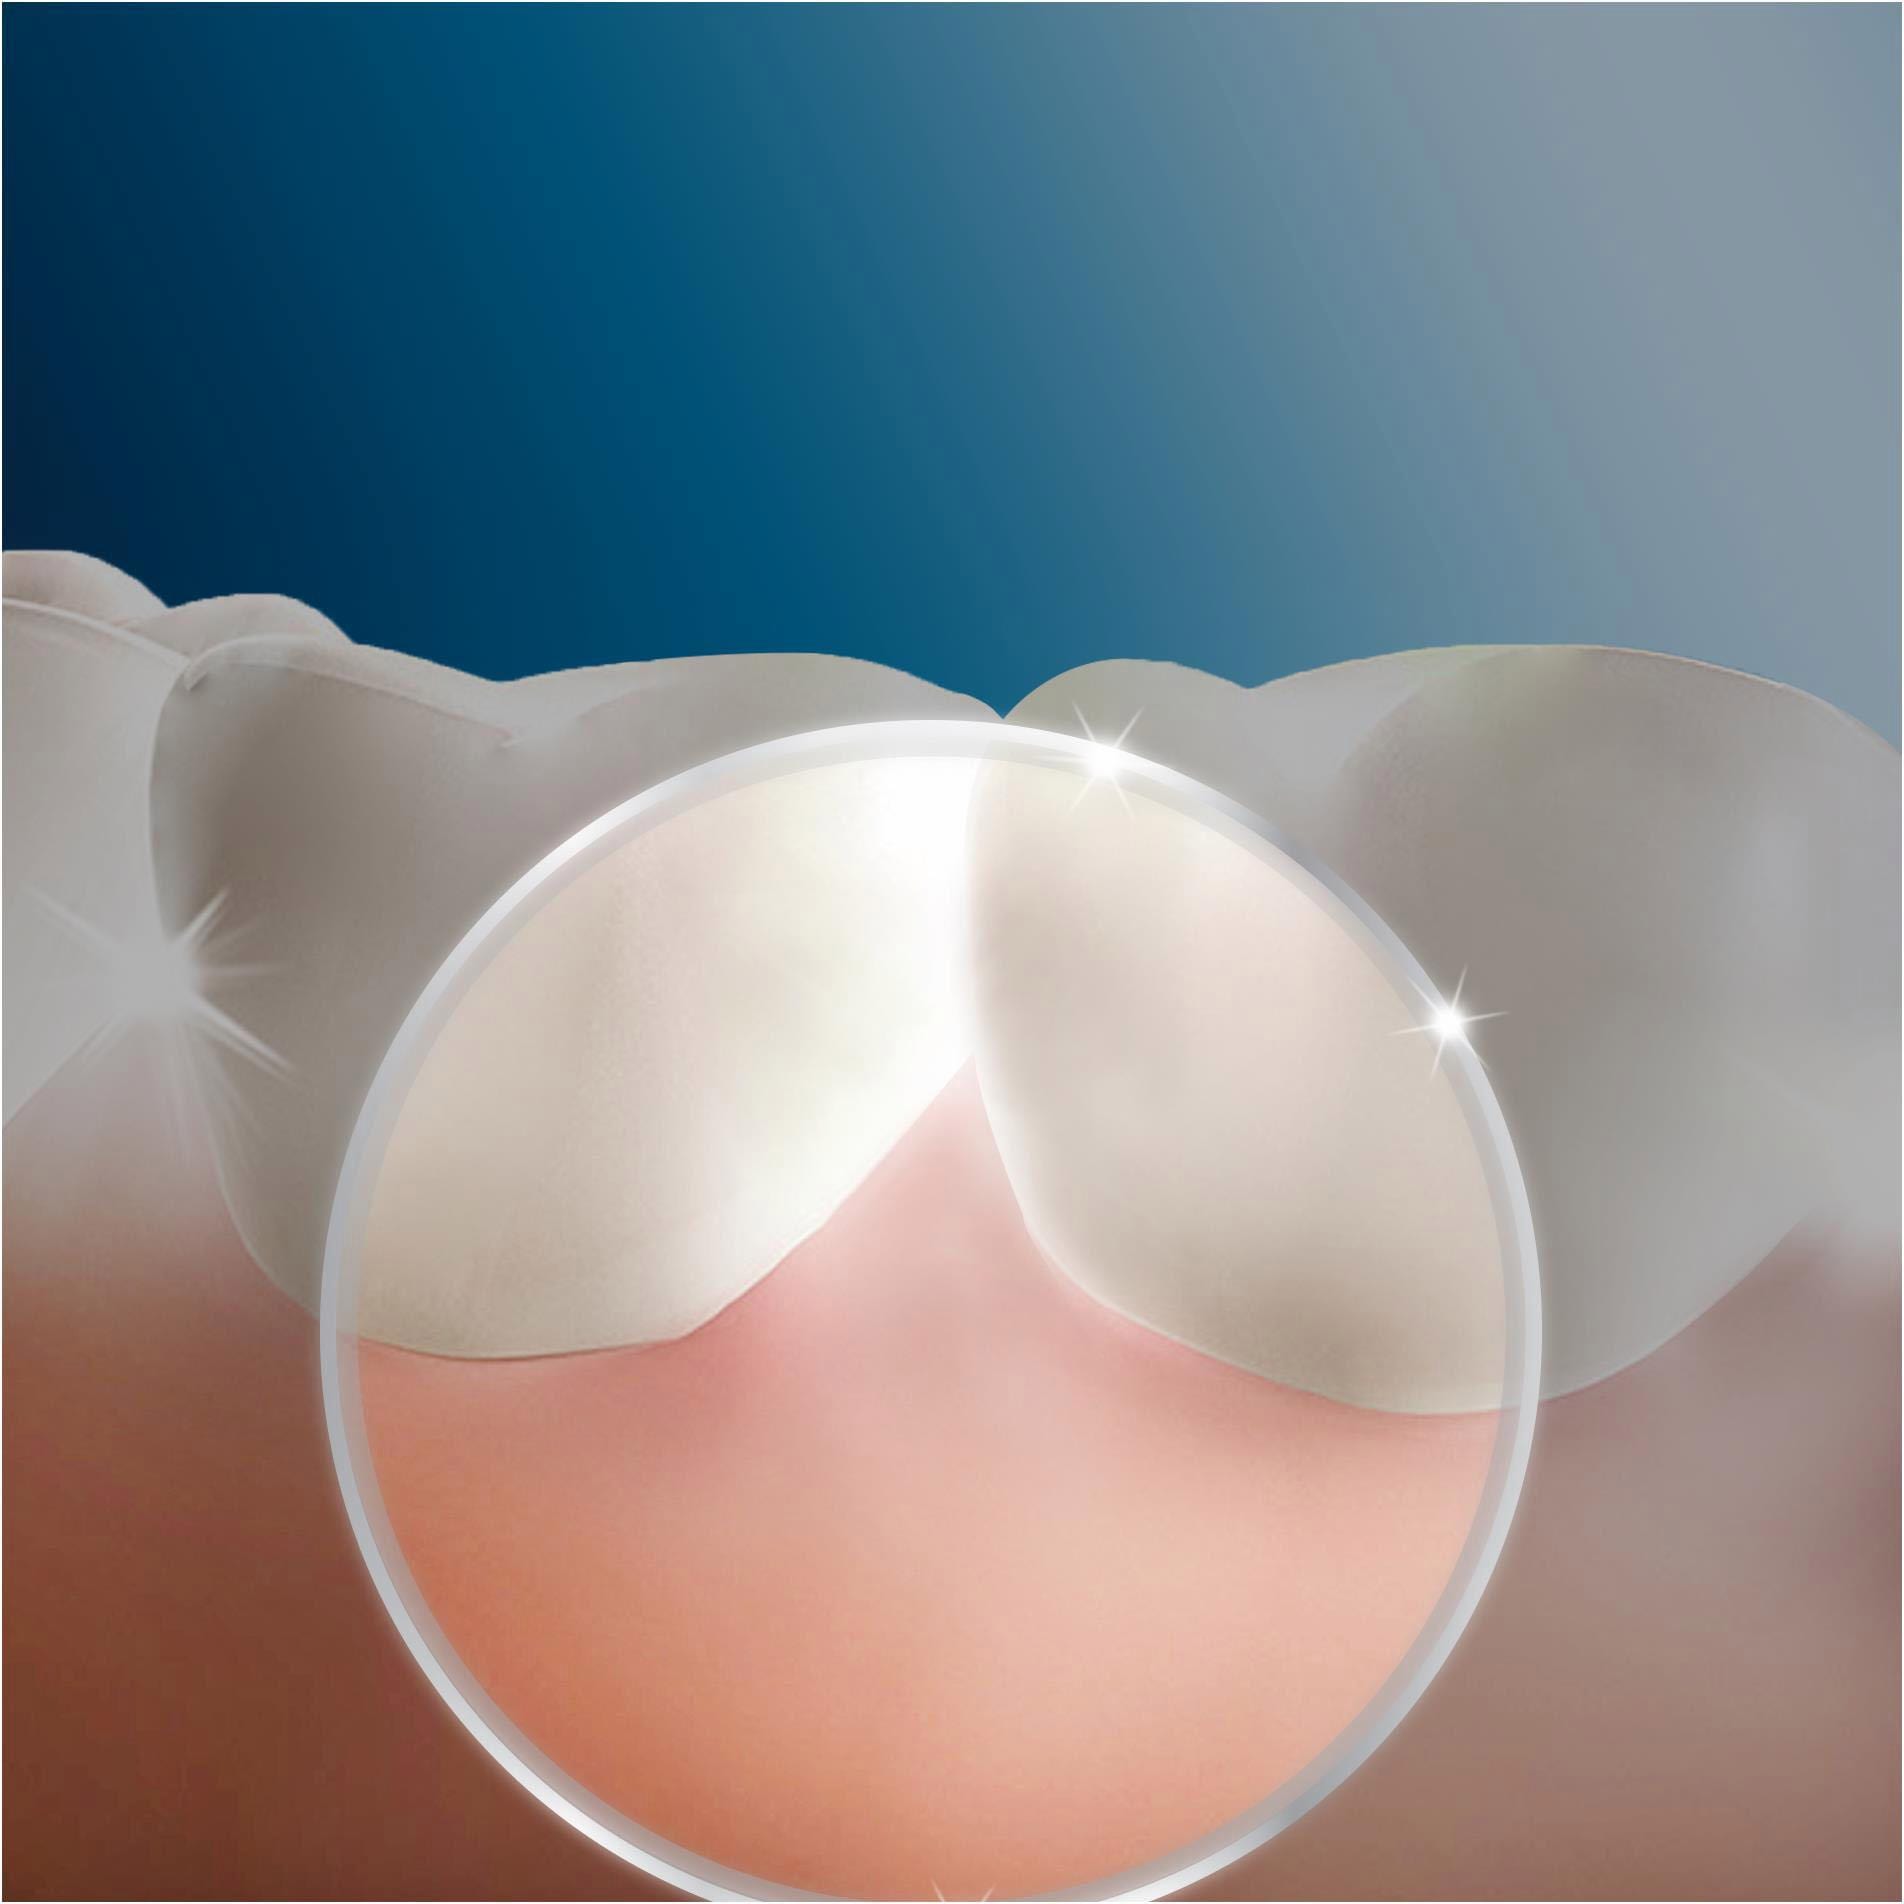 Oral-B Munddusche »OxyJet«, 4 St. Aufsätze}, Mikro-Luftblasen-Technologie